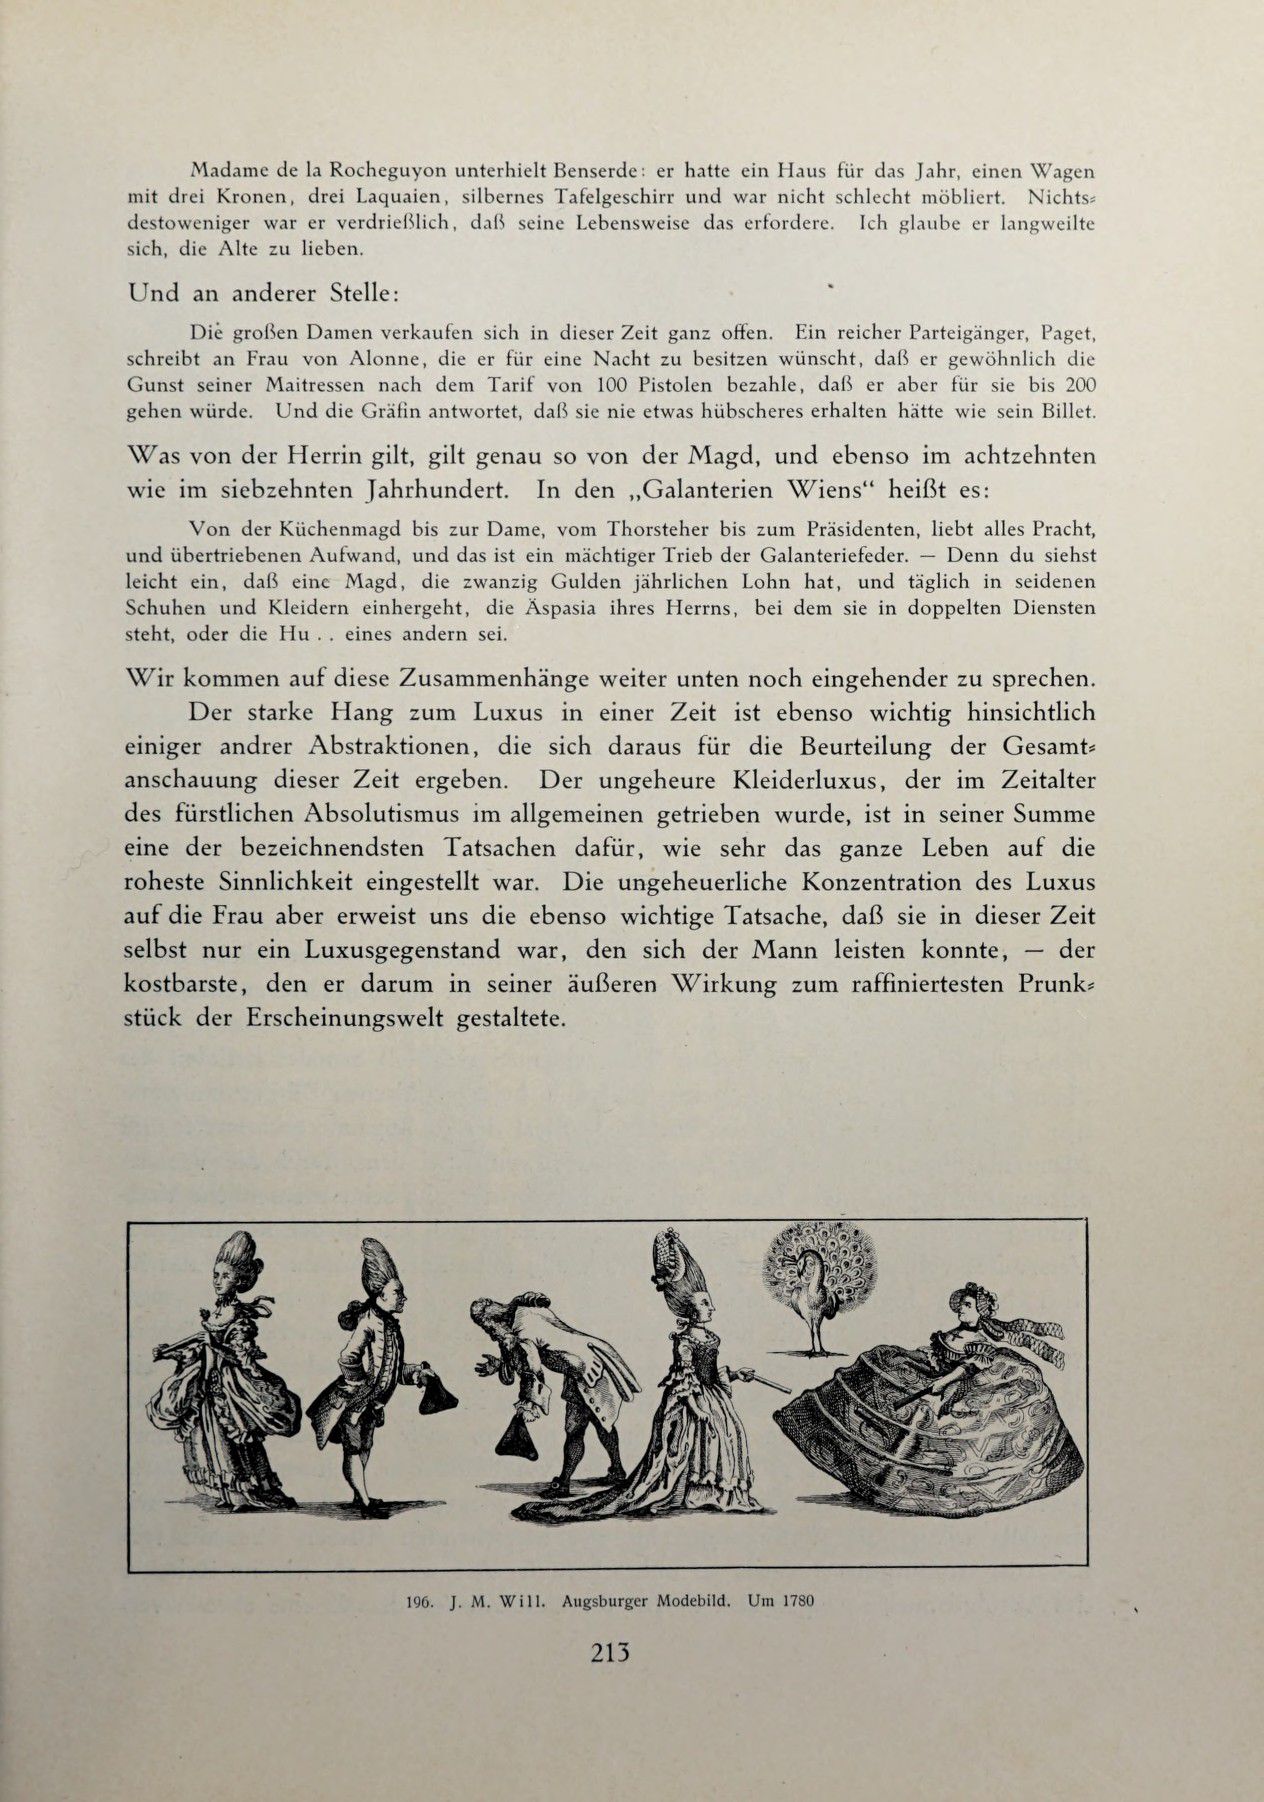 [Eduard Fuchs] Illustrierte Sittengeschichte vom Mittelalter bis zur Gegenwart: Bd. 2. and Ergänzungsband. Die galante Zeit [German] 312